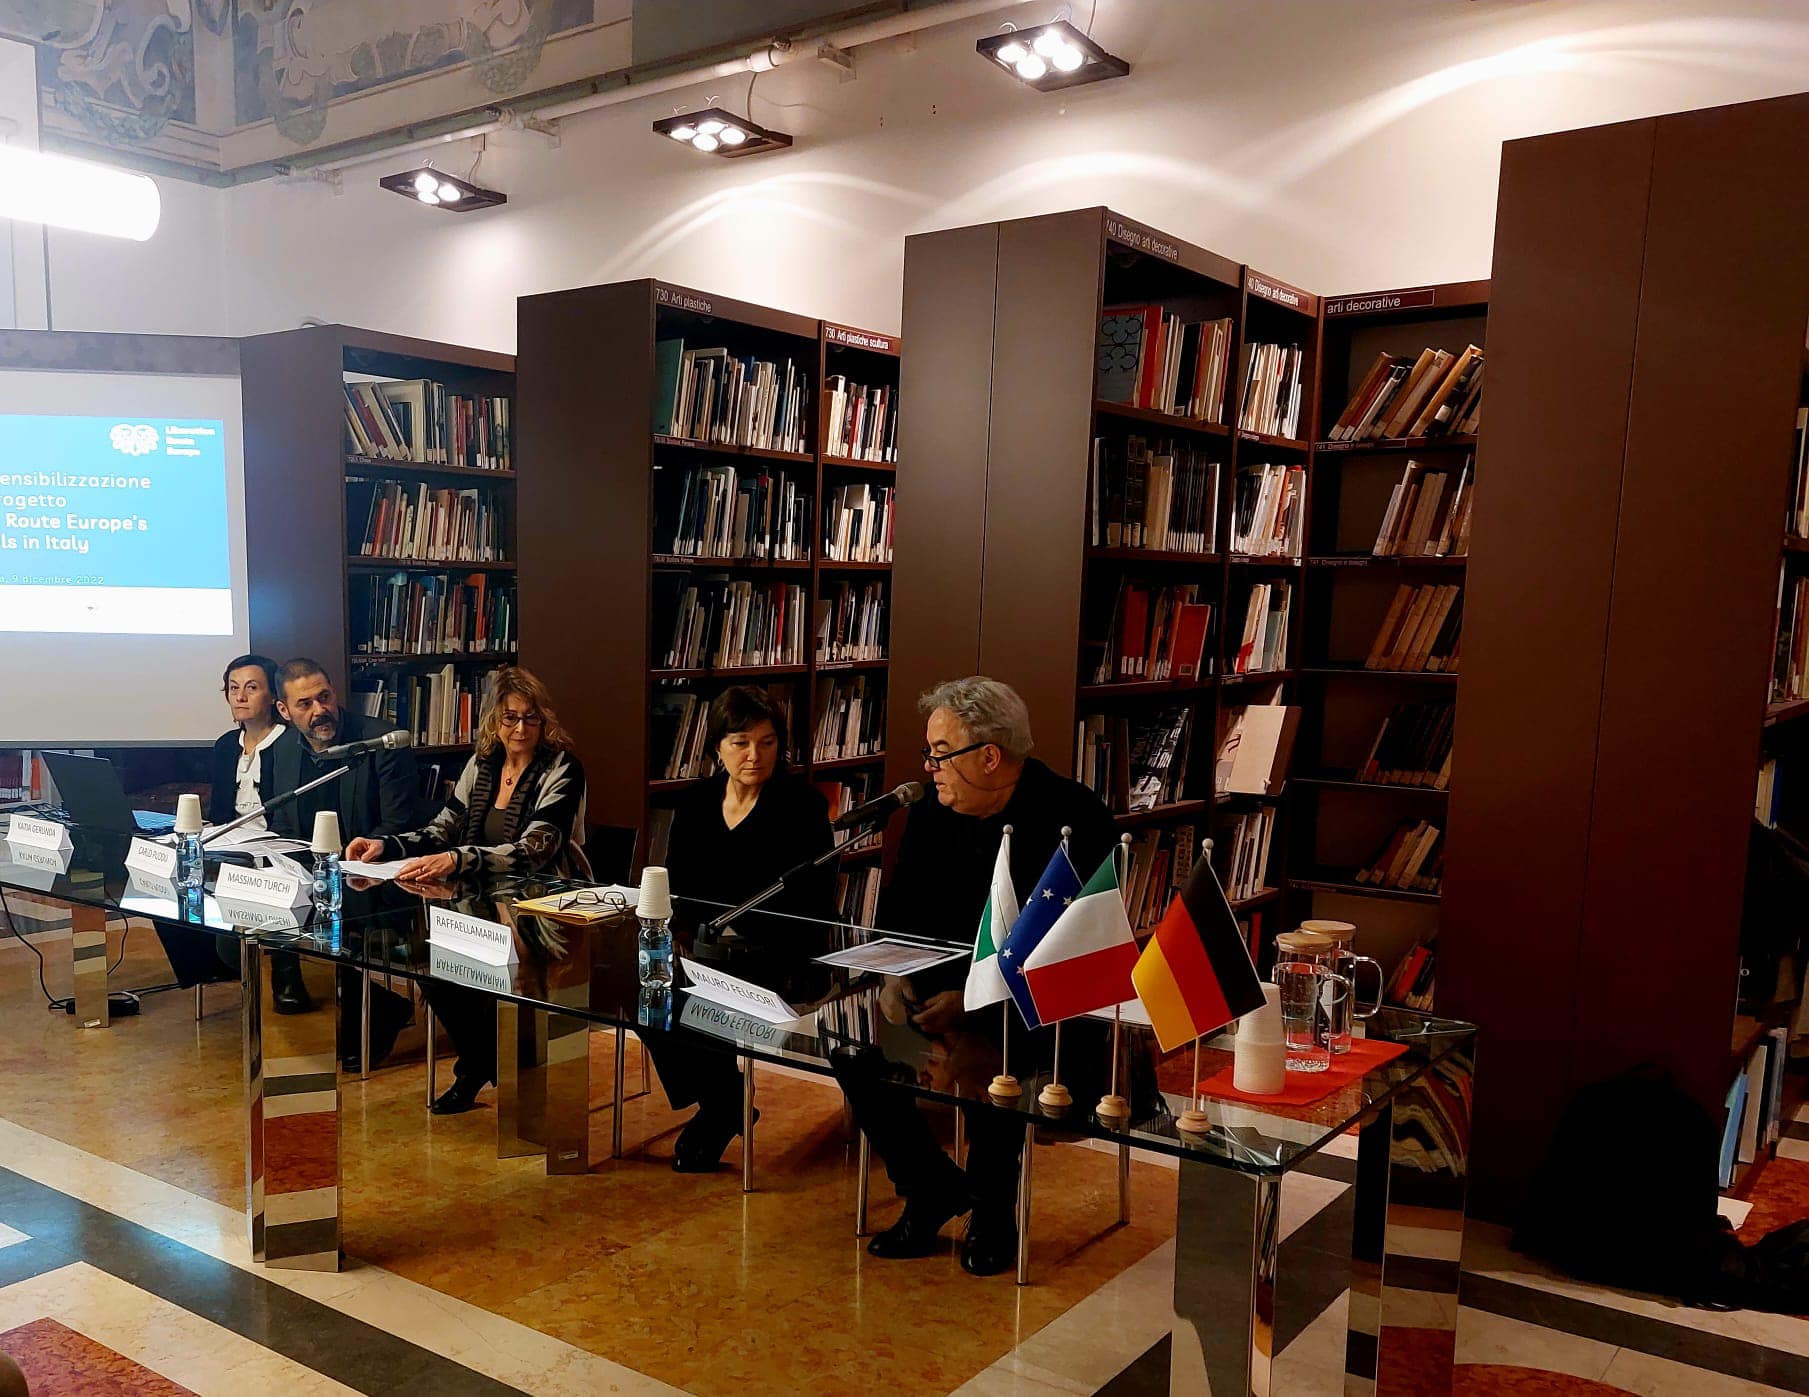 Conclusi gli eventi di sensibilizzazione previsti dal progetto “Liberation Route Europe’s Trails in Italy”